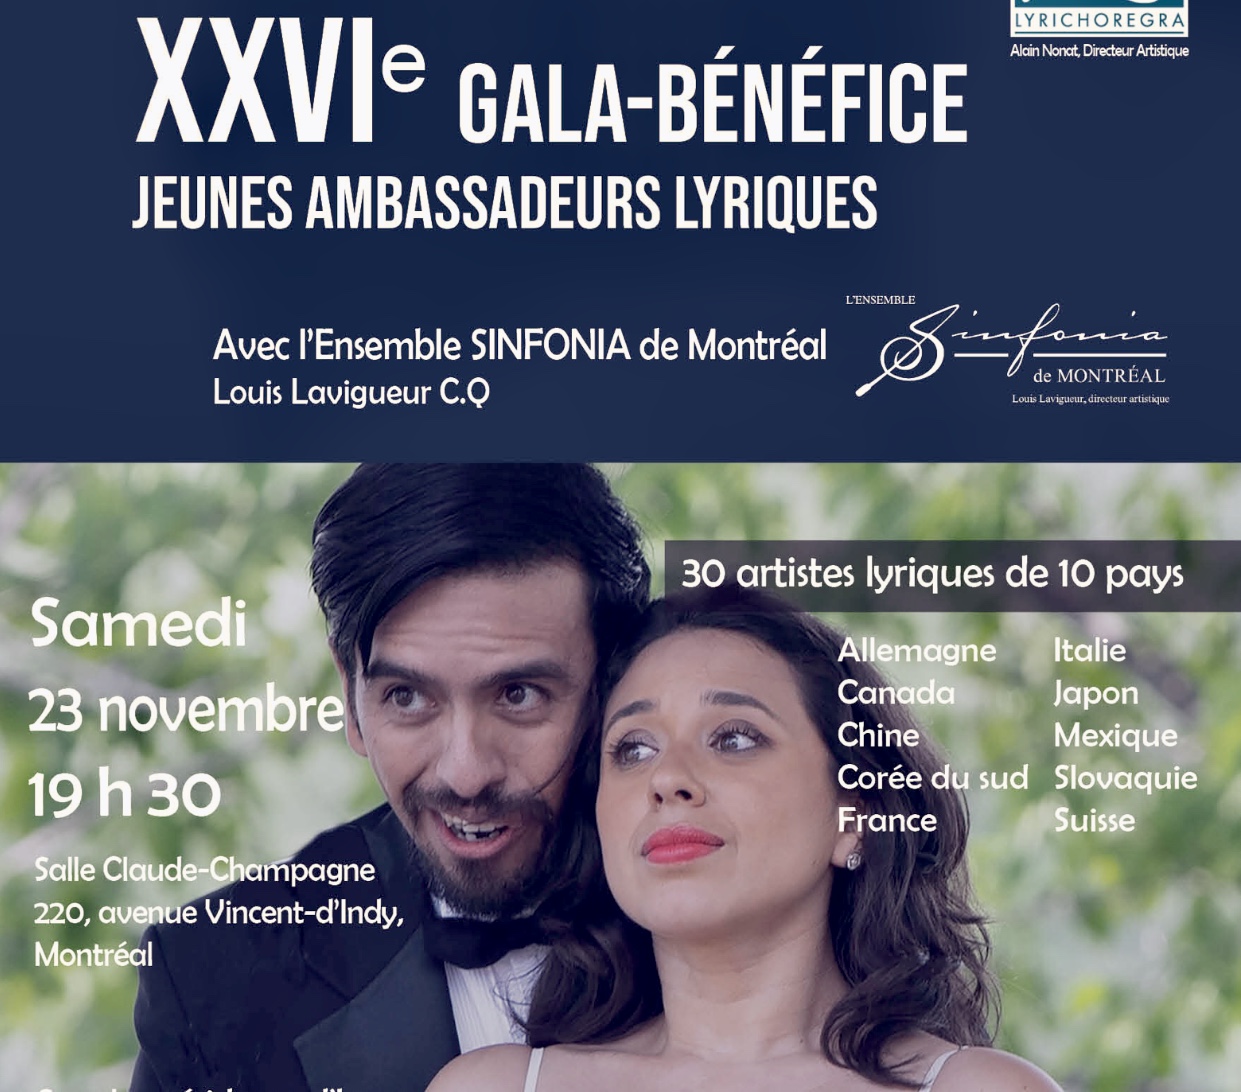 Le Théâtre Lyrichorégra 20 présente son gala-bénéfice annuel Xxxii, proposant une soirée inoubliable de spectacles et de divertissements. Assistez au bénéfice du gala Xxxii